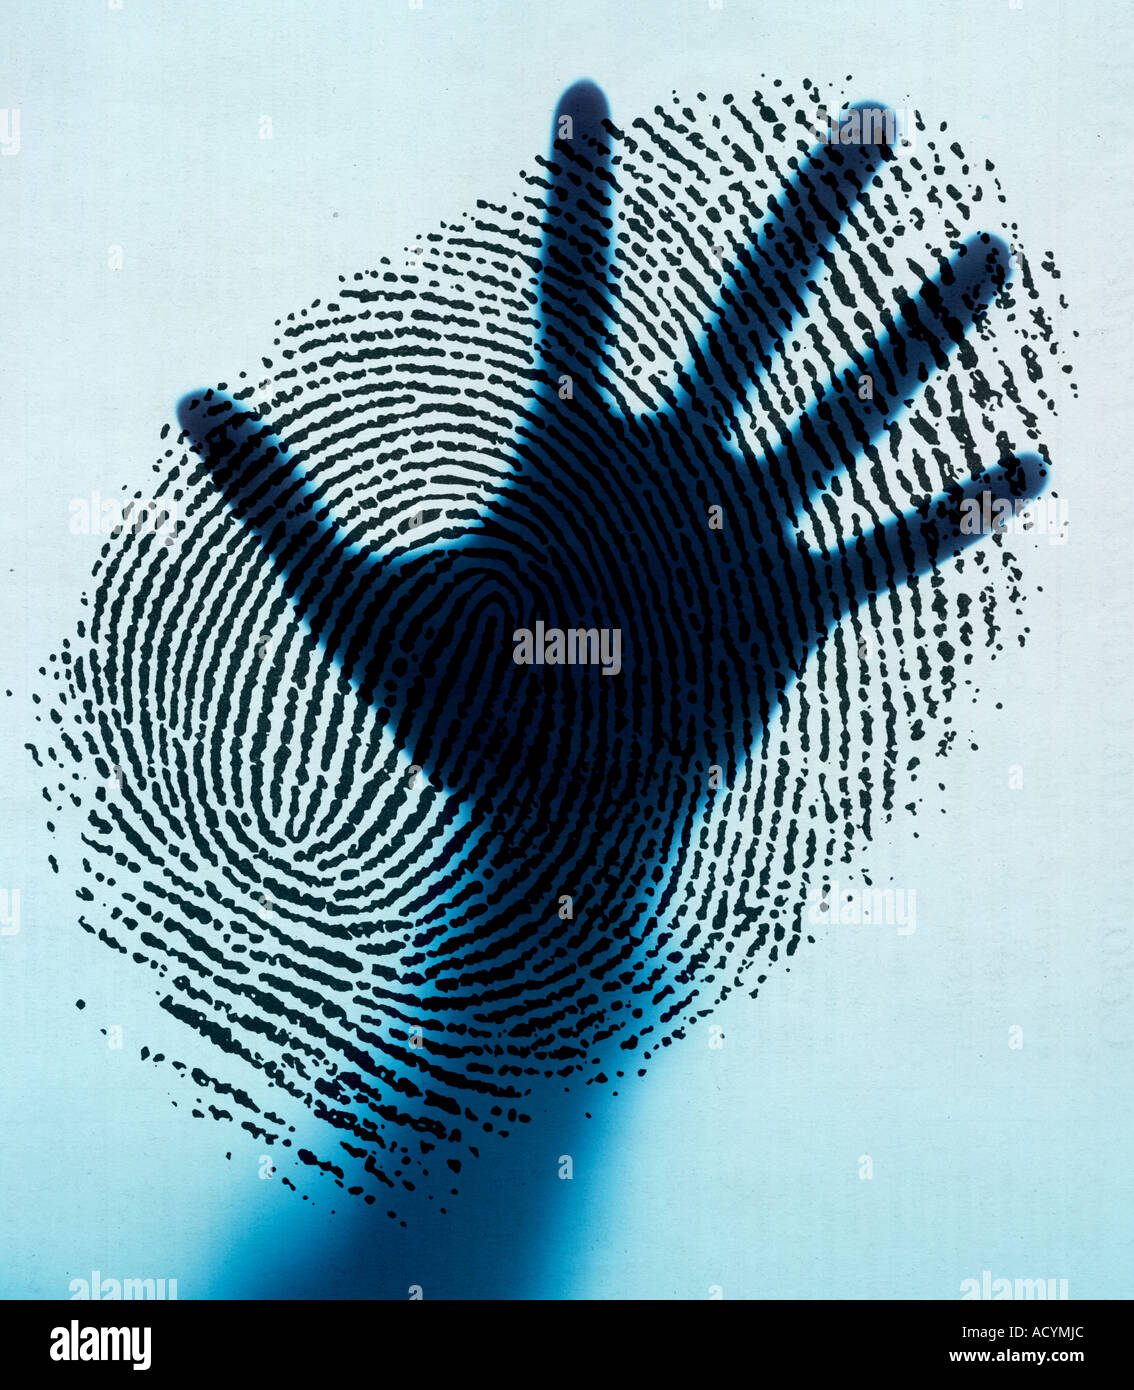 Silhouette von Hand mit den Fingern verteilt eine große Fingerabdruck Stockfoto